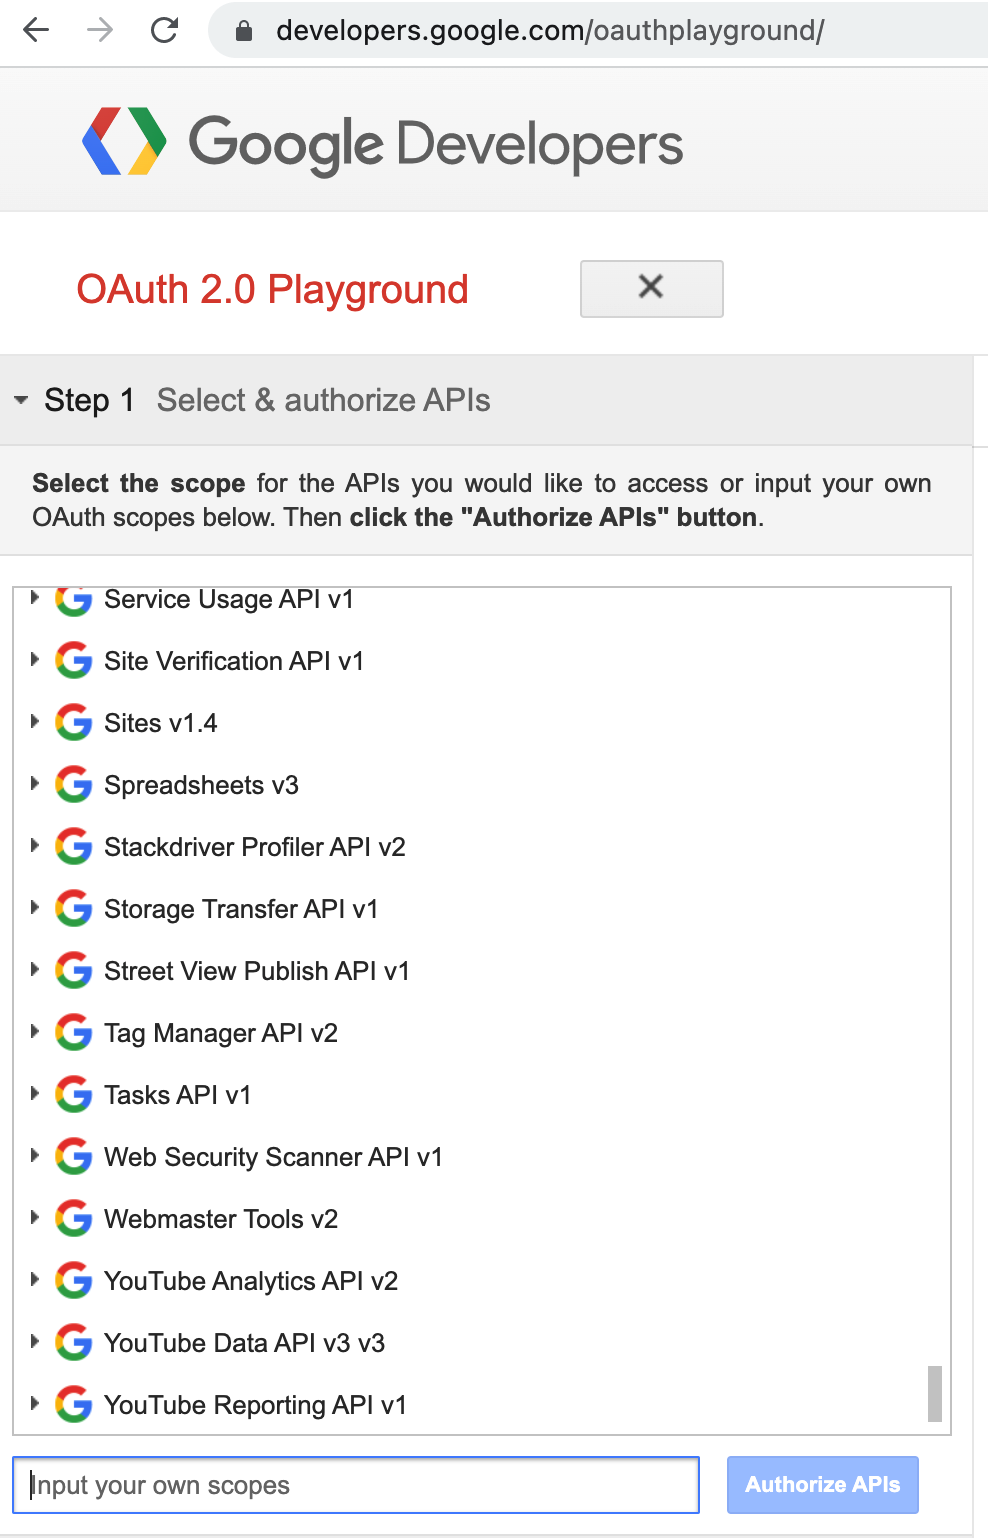 Imagem da etapa 1 da configuração do playground do Google OAuth